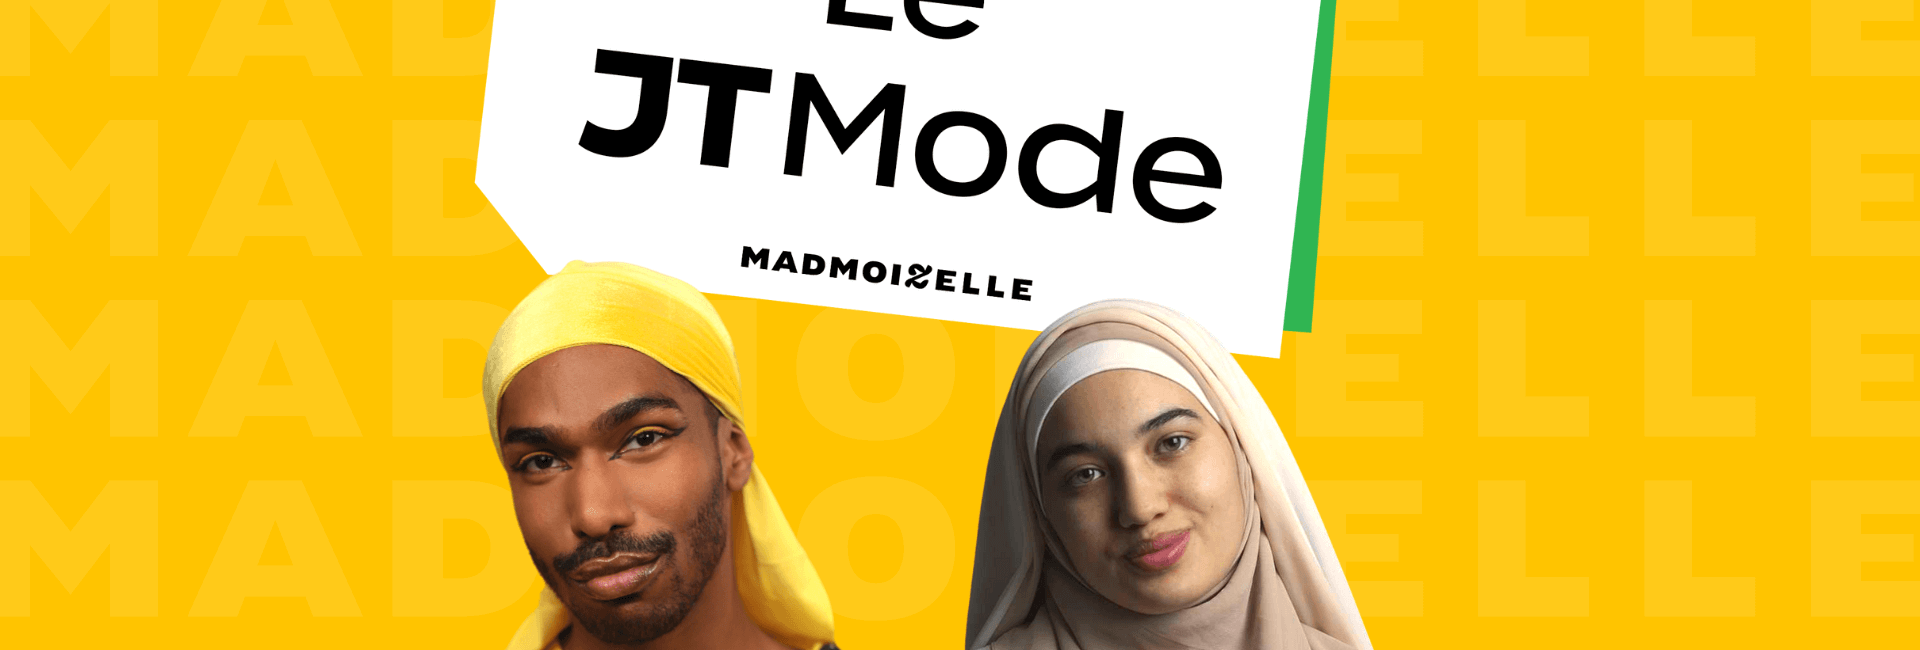 Le JT Mode de Madmoizelle